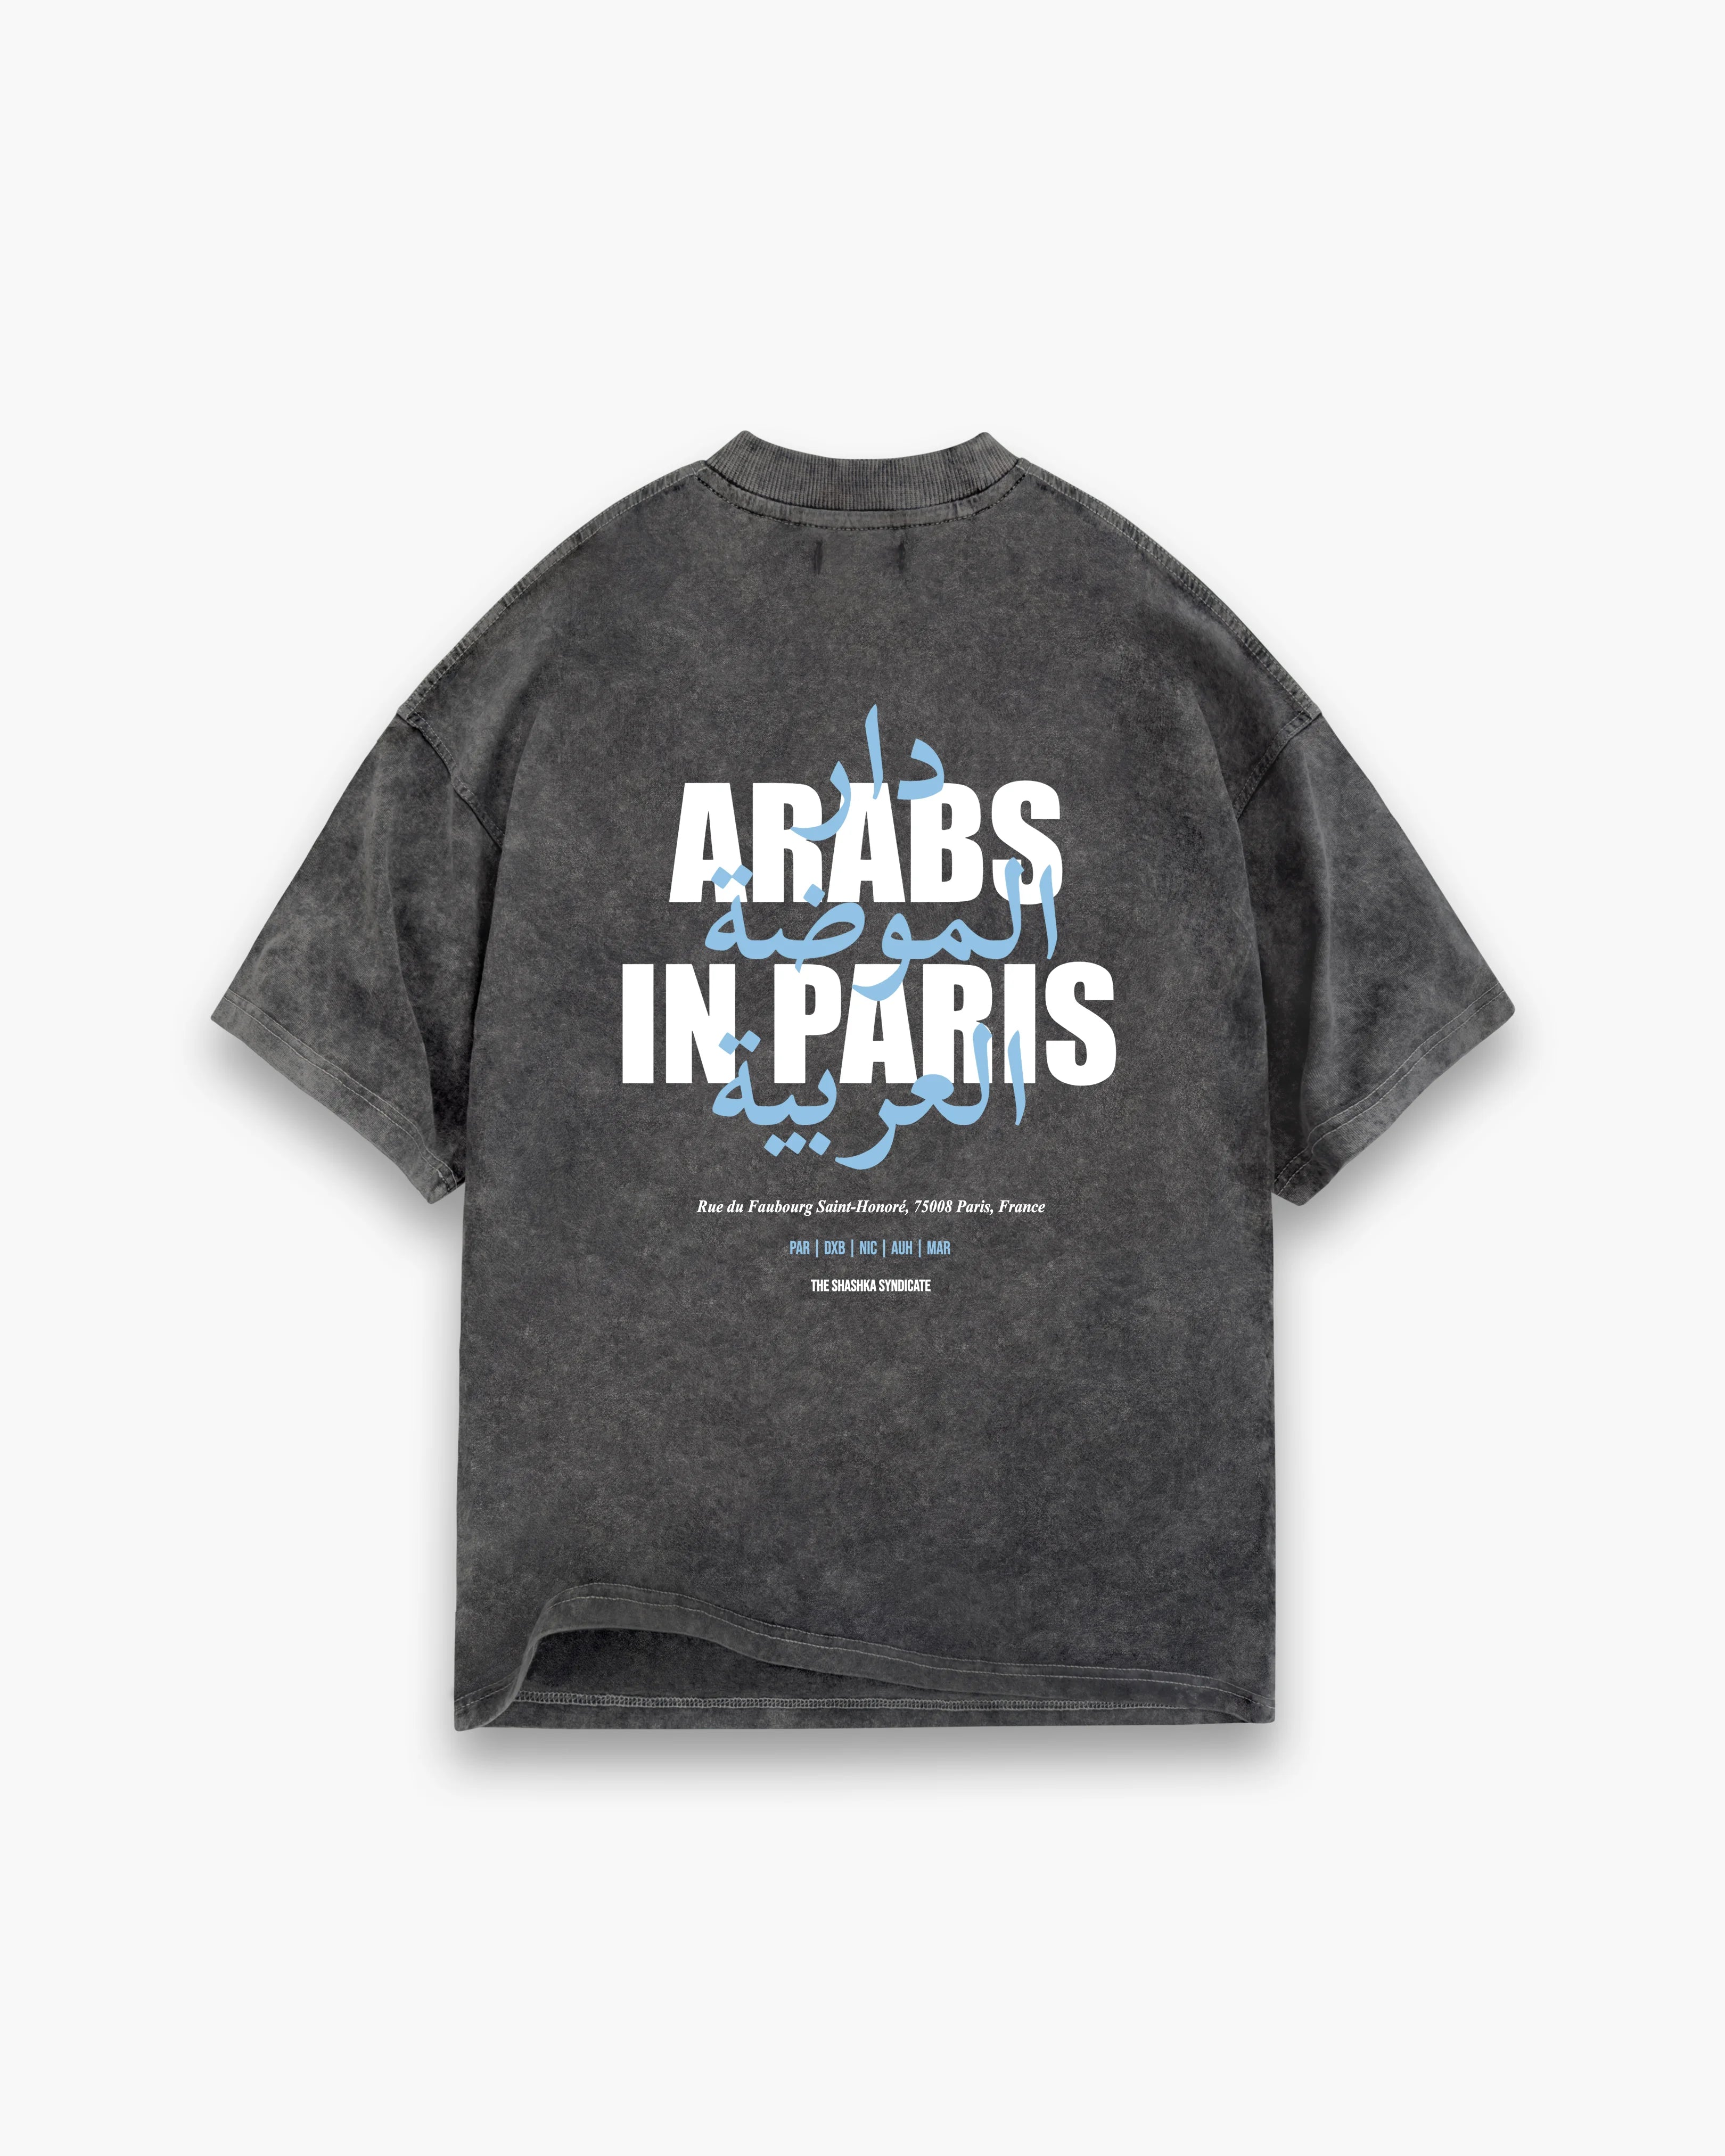 Calligraphy Arabs In Paris Heavy Tee